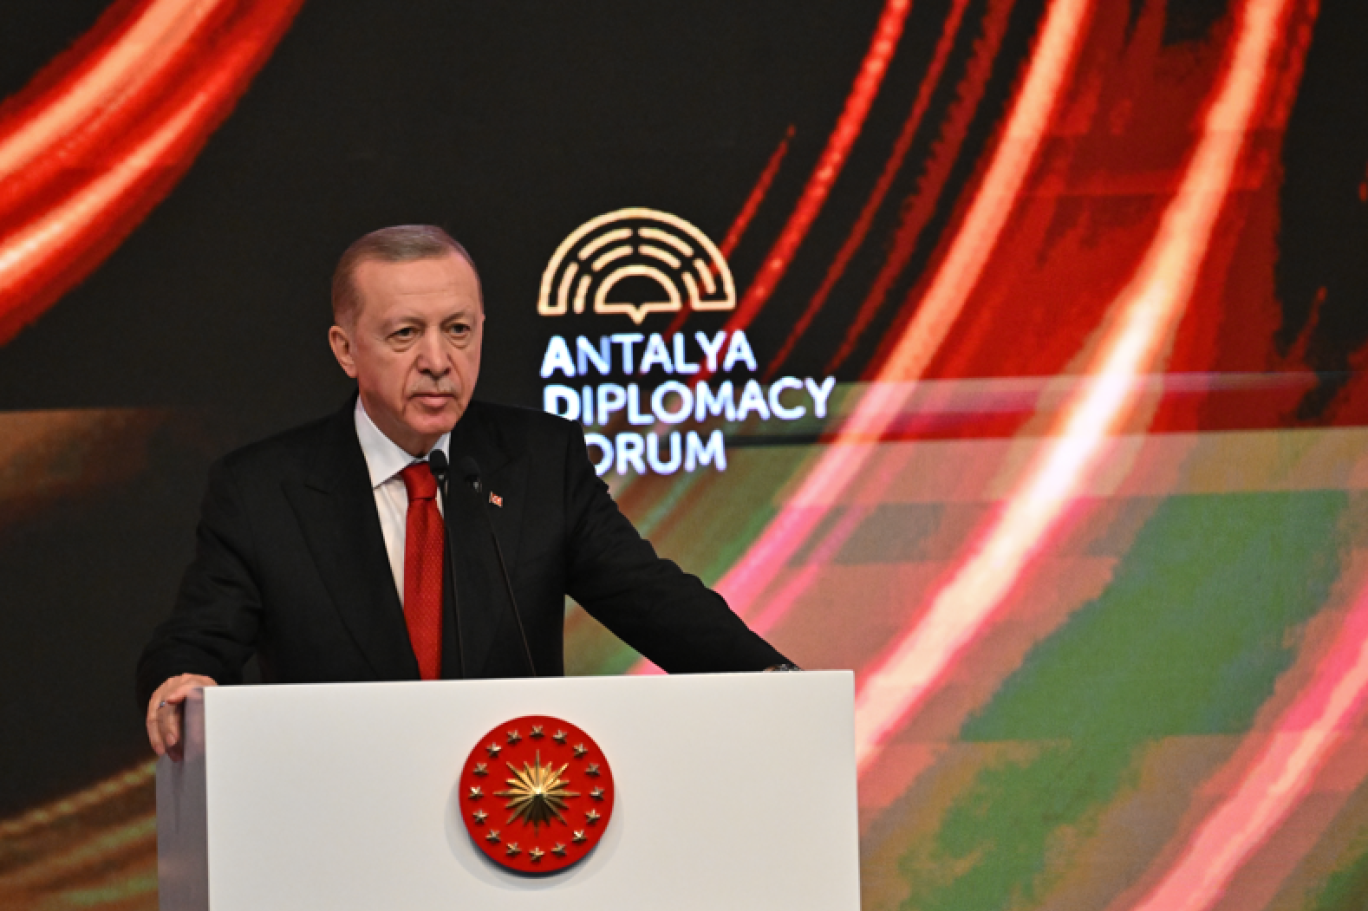 YAP nümayəndə heyəti III Antalya Diplomatiya Forumunda iştirak EDİR